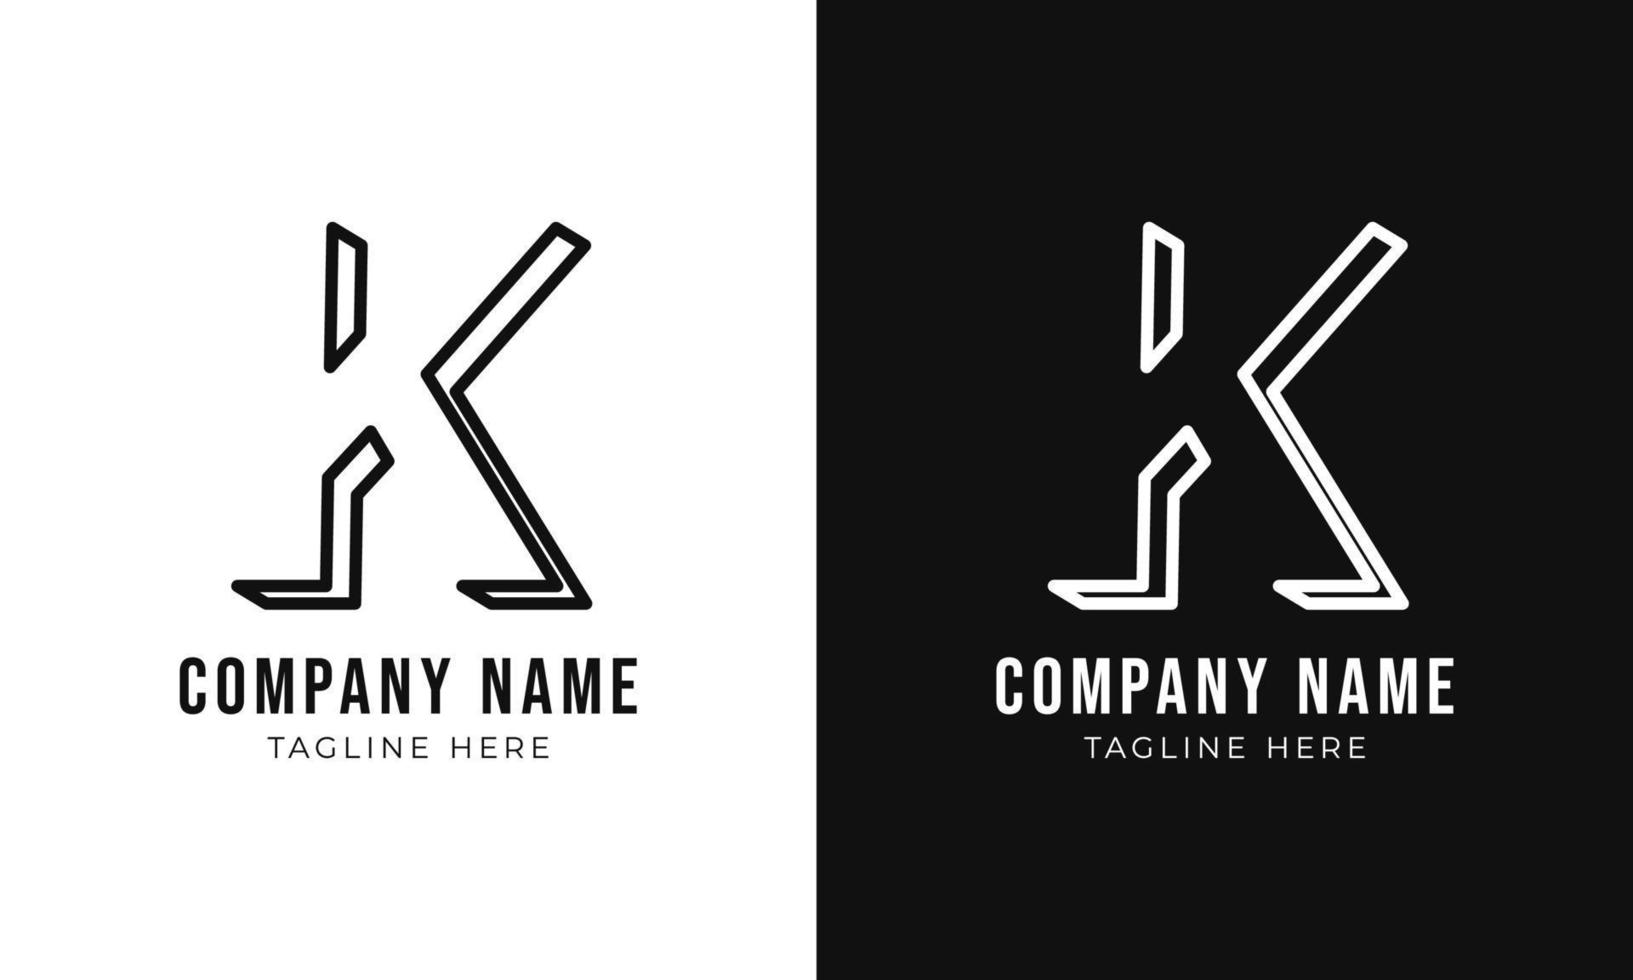 modelo de design de logotipo de monograma de letra inicial k. logotipo k estilo contorno 3d e cores pretas vetor